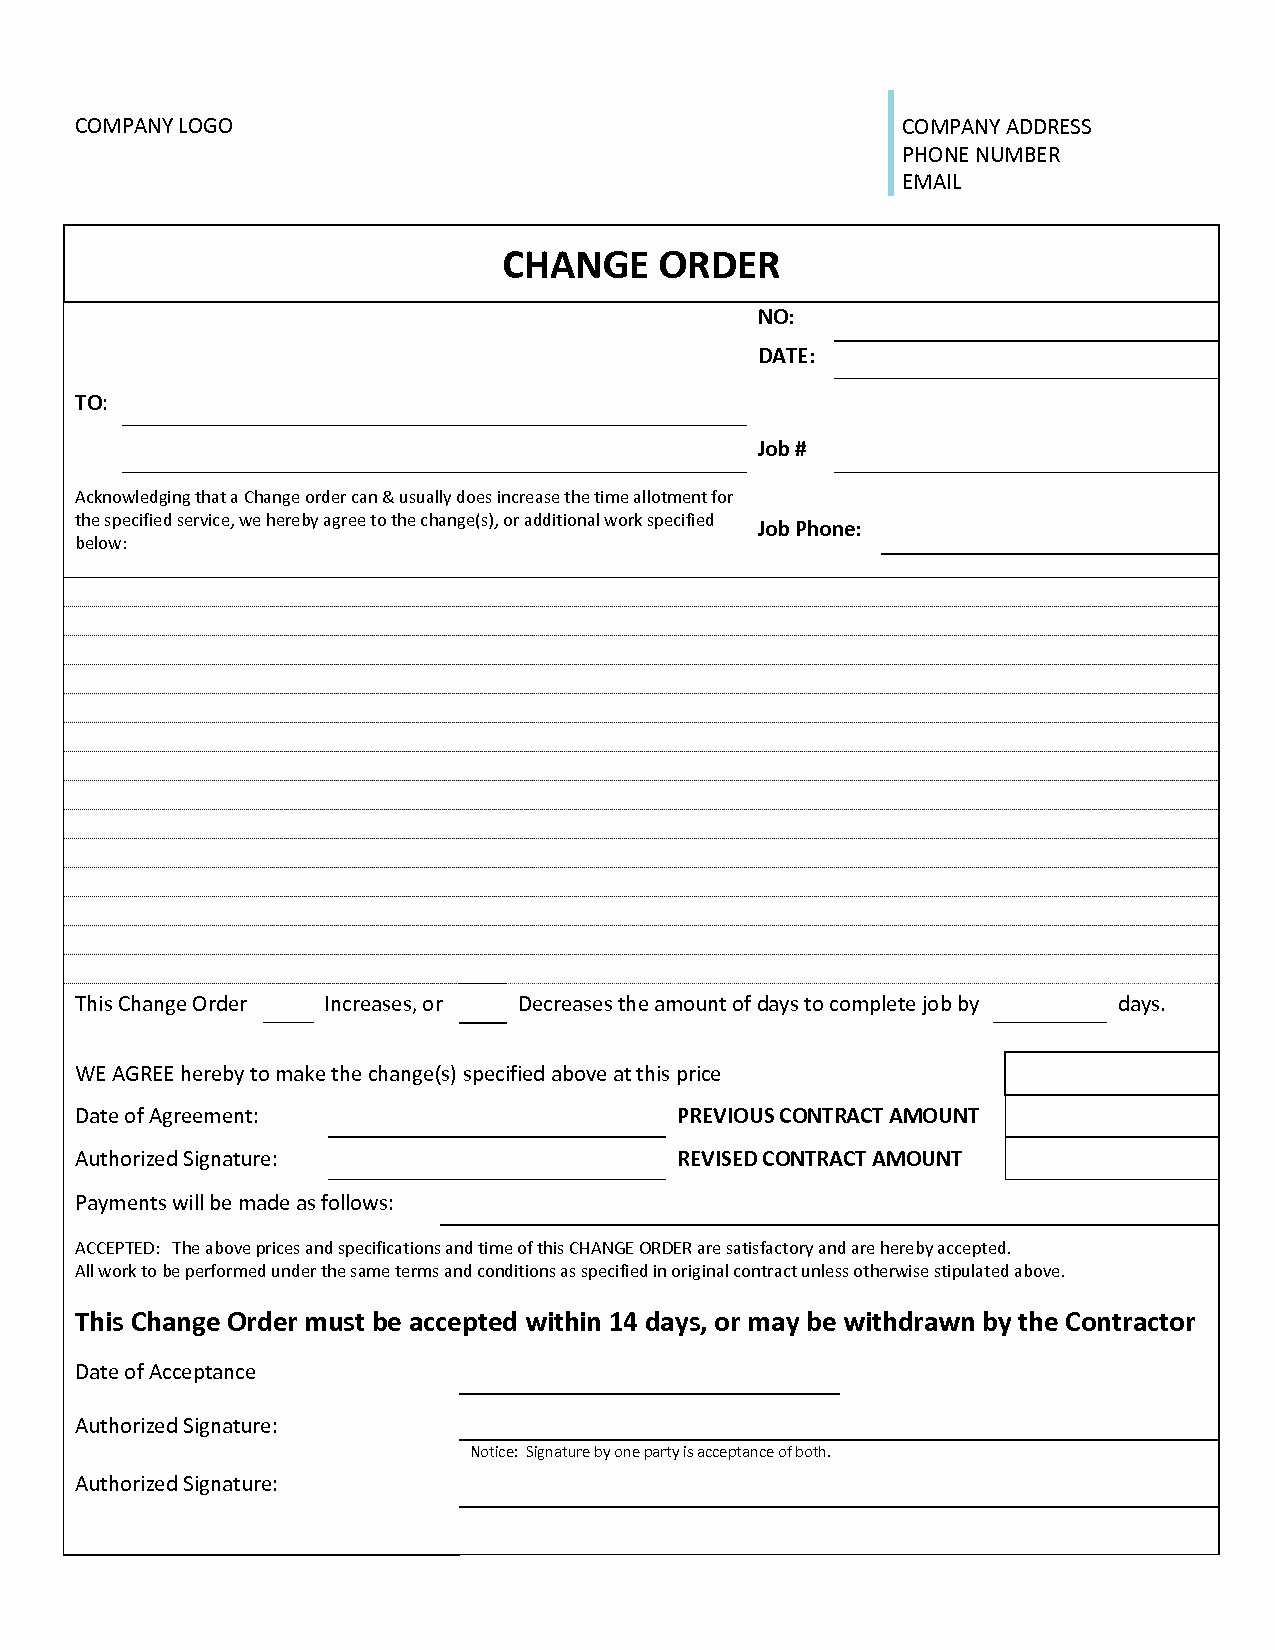 change order form template elegant 3 construction change order templates of change order form template